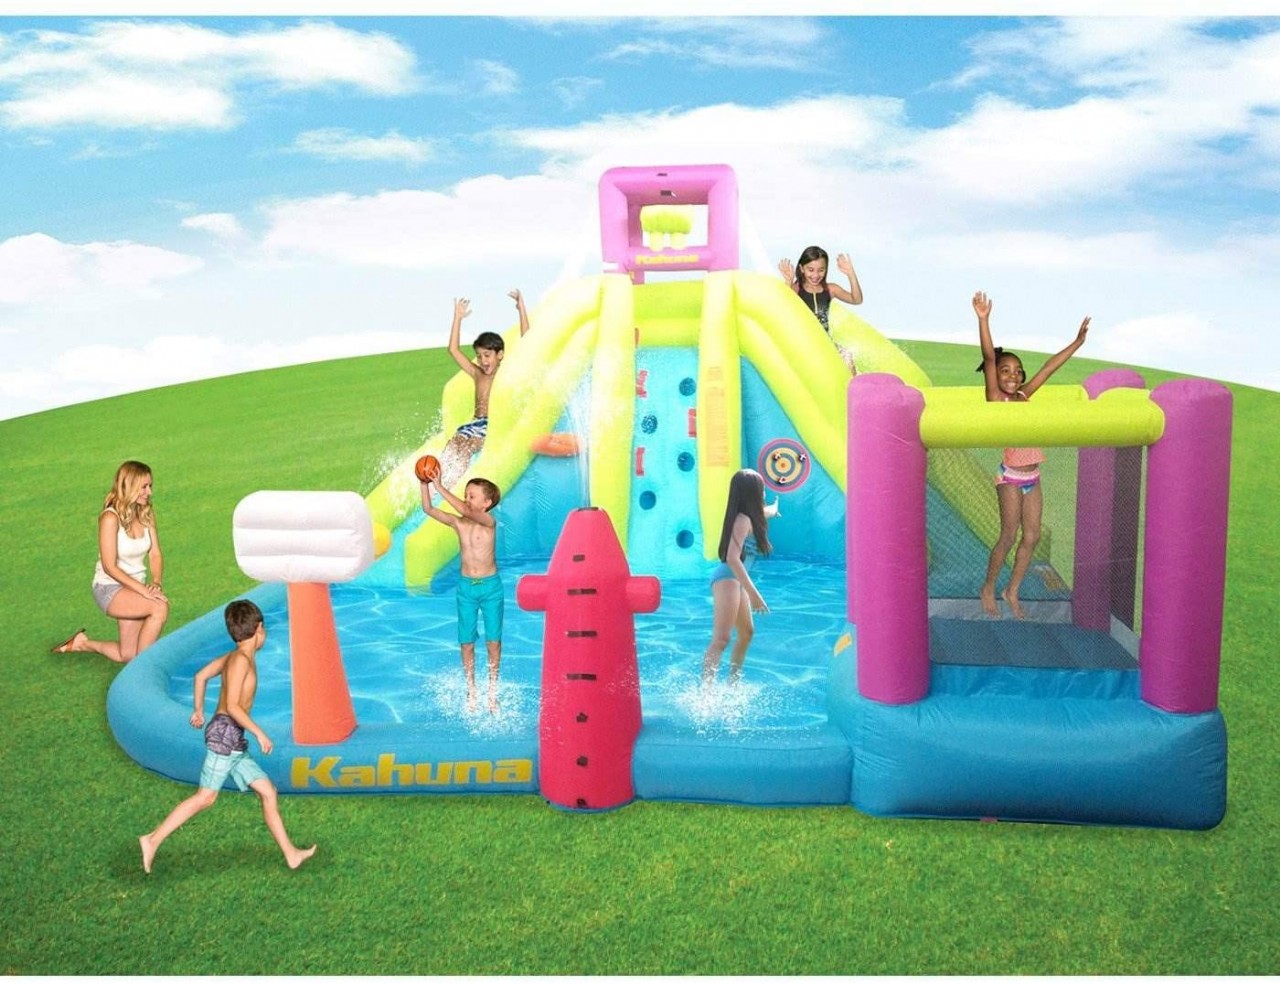 Kahuna Twin Peaks Outdoor Inflatable Kiddie Water Park Pool w/Slide